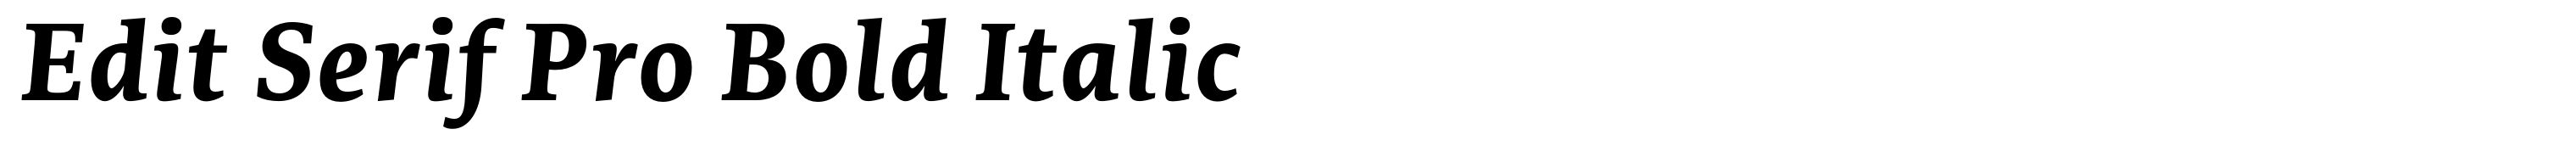 Serif Pro Bold Italic bearbeiten